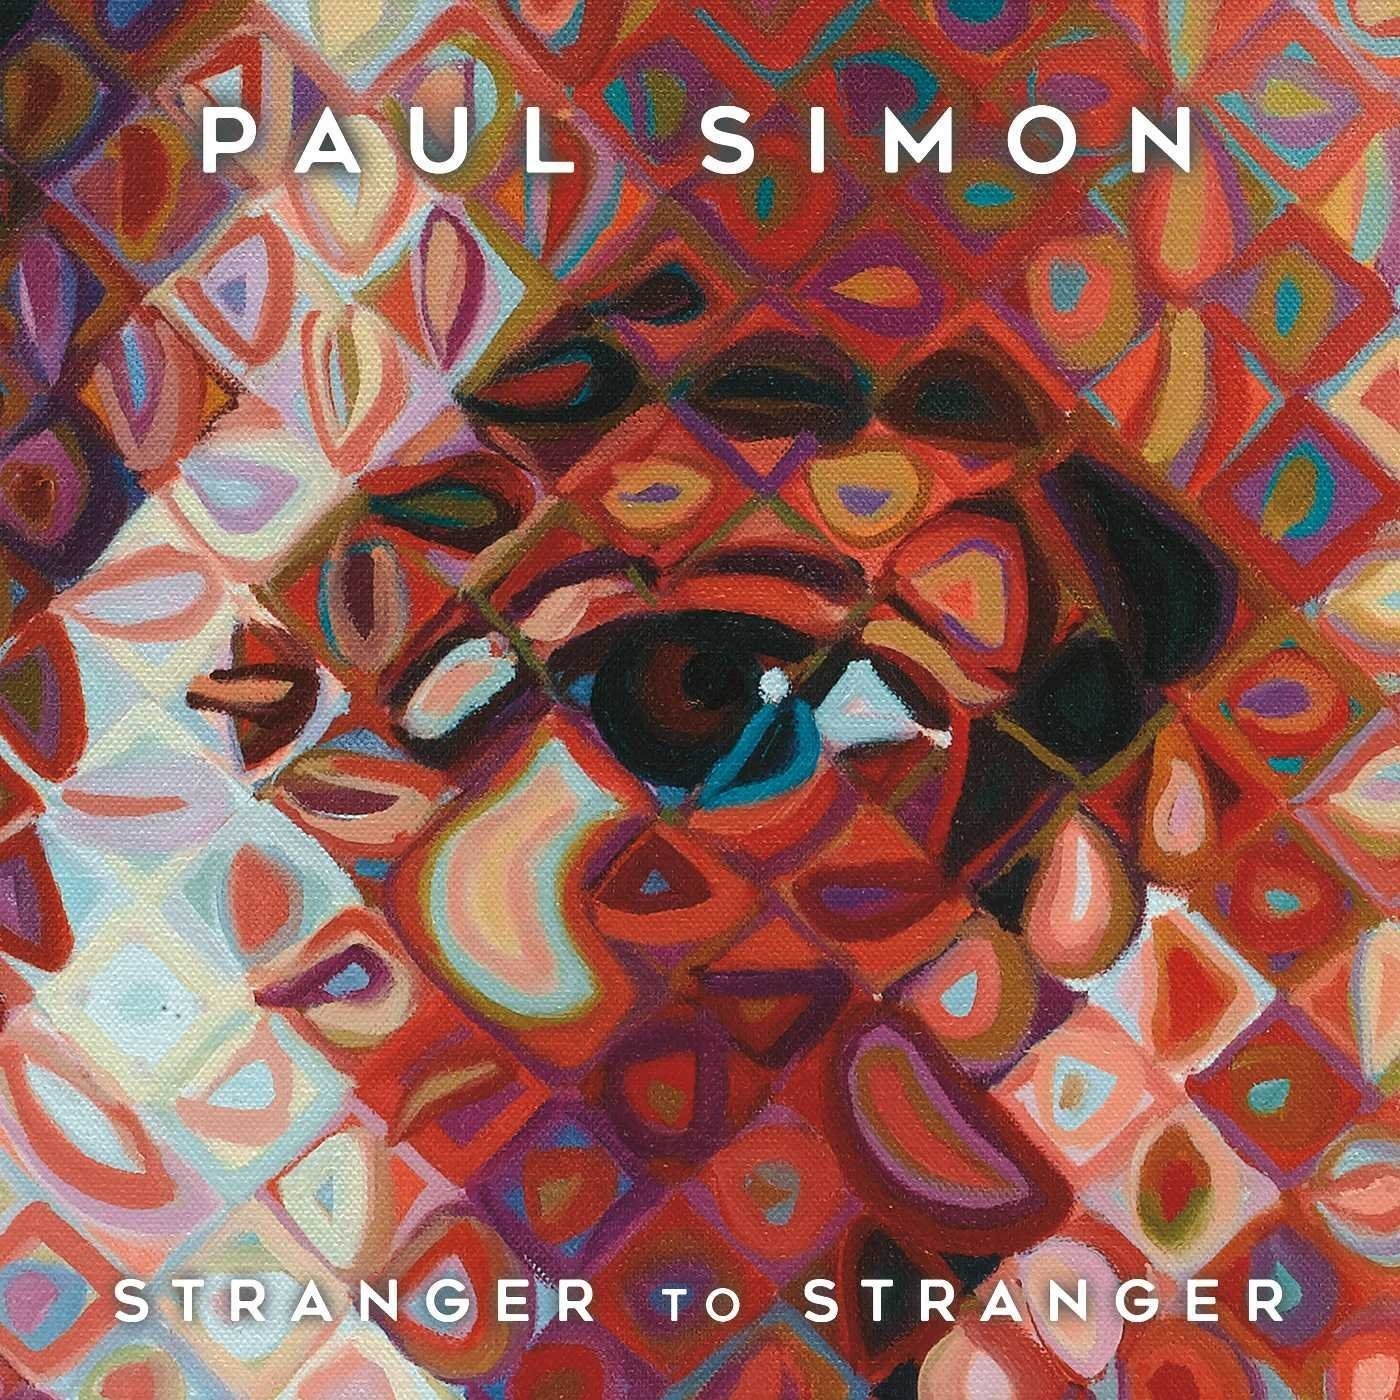 Paul Simon – Stranger To Stranger {Deluxe Edition} (2016) [HDTracks FLAC 24bit/96kHz]